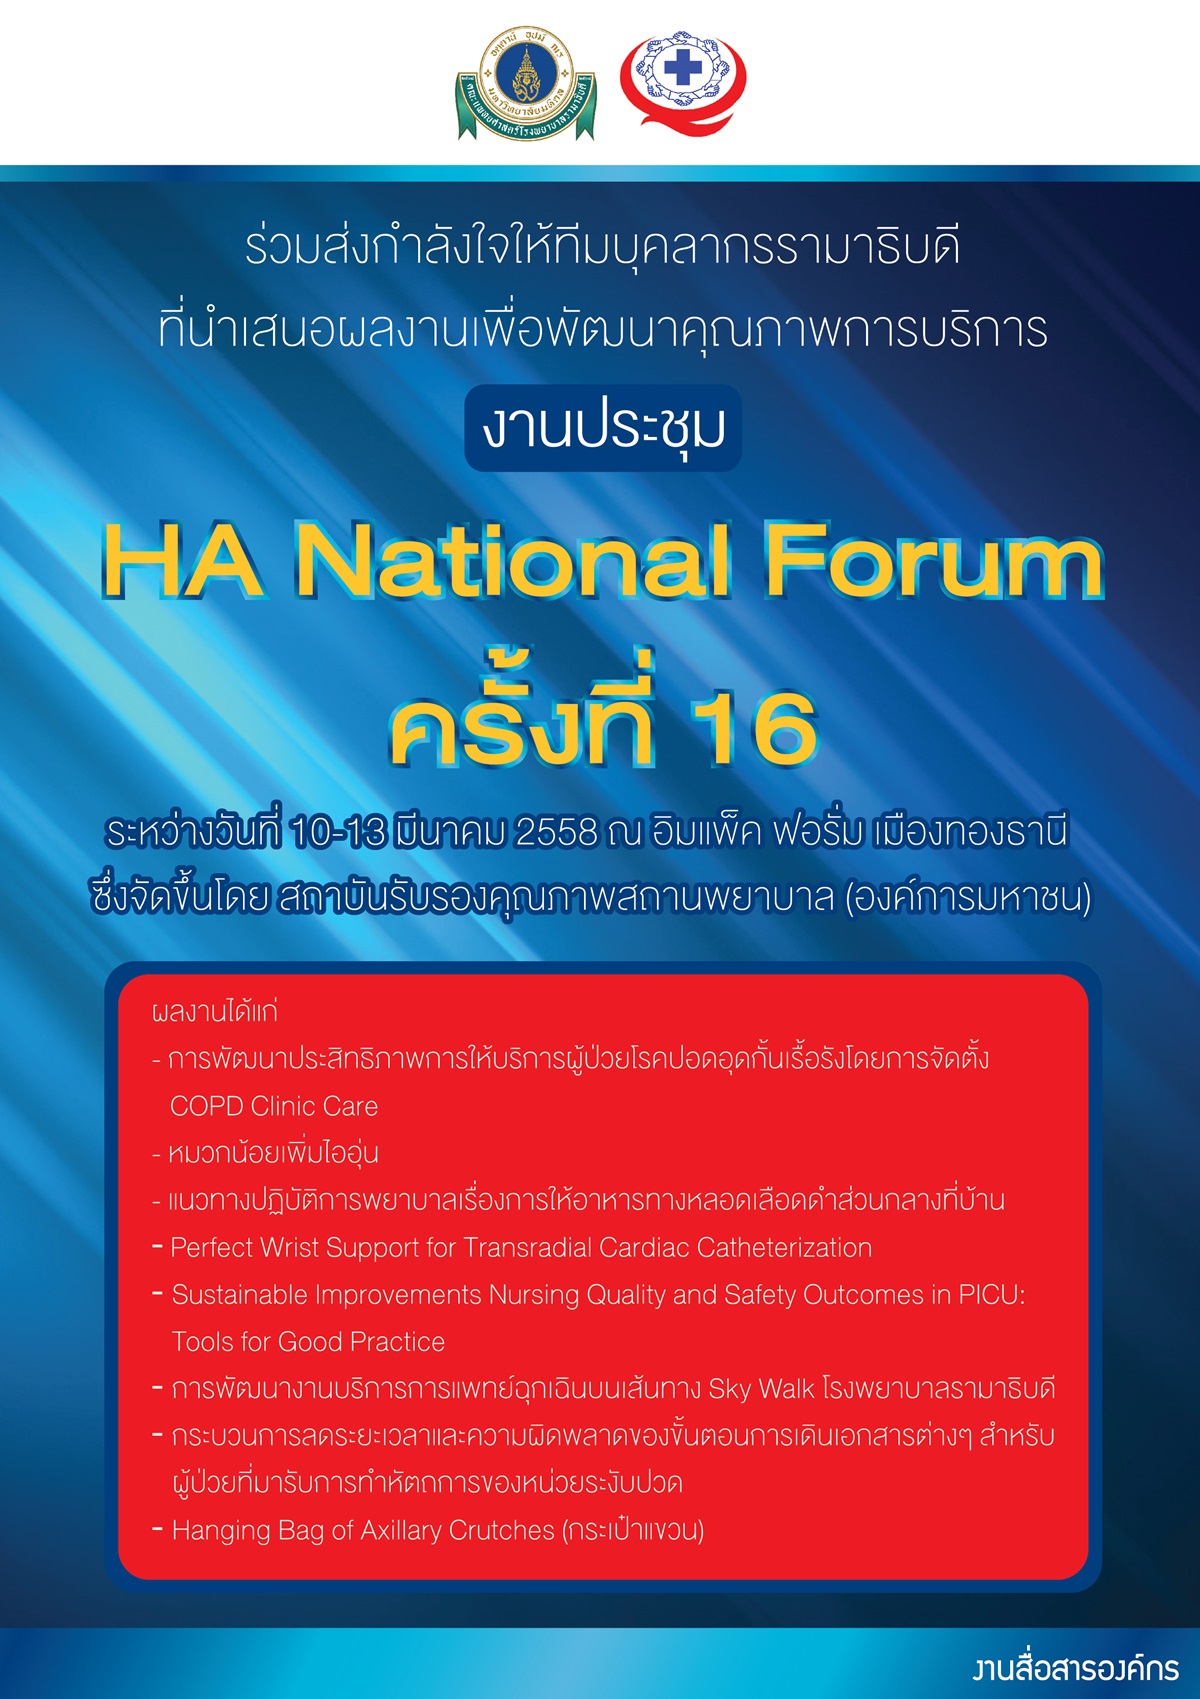 งานประชุม HA National Forum ครั้งที่ 16